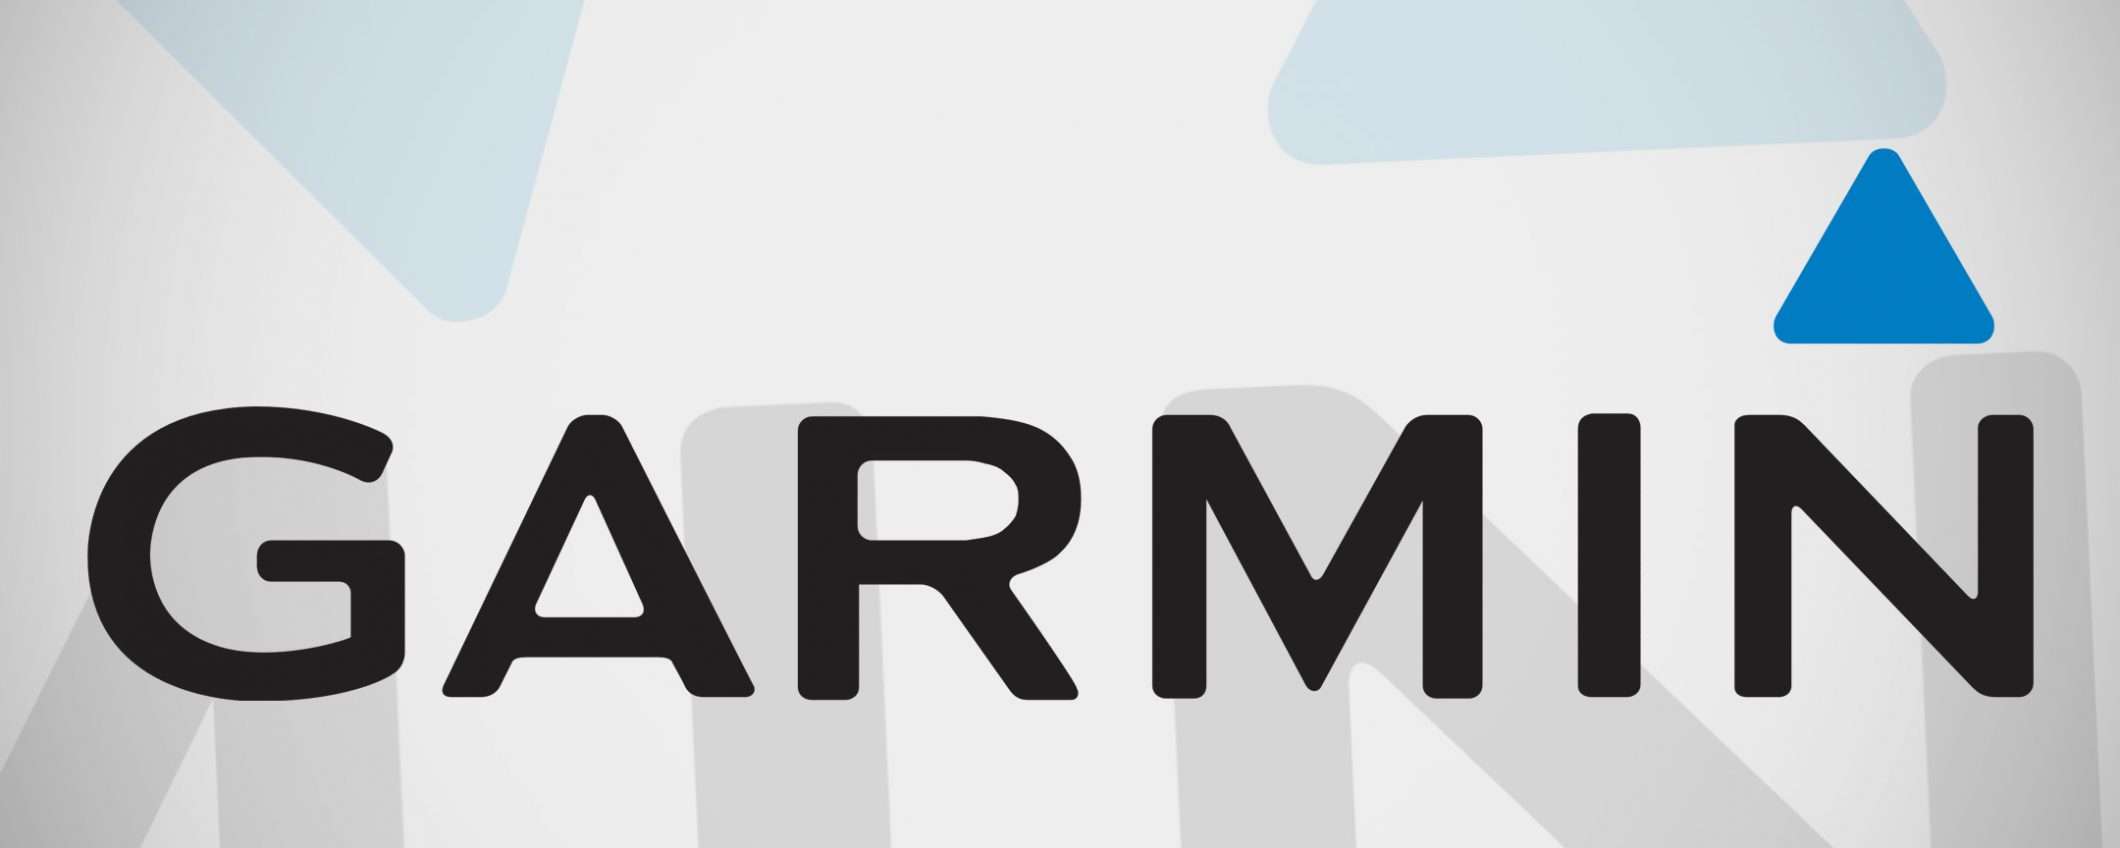 Garmin pubblica una FAQ sull'attacco ransomware